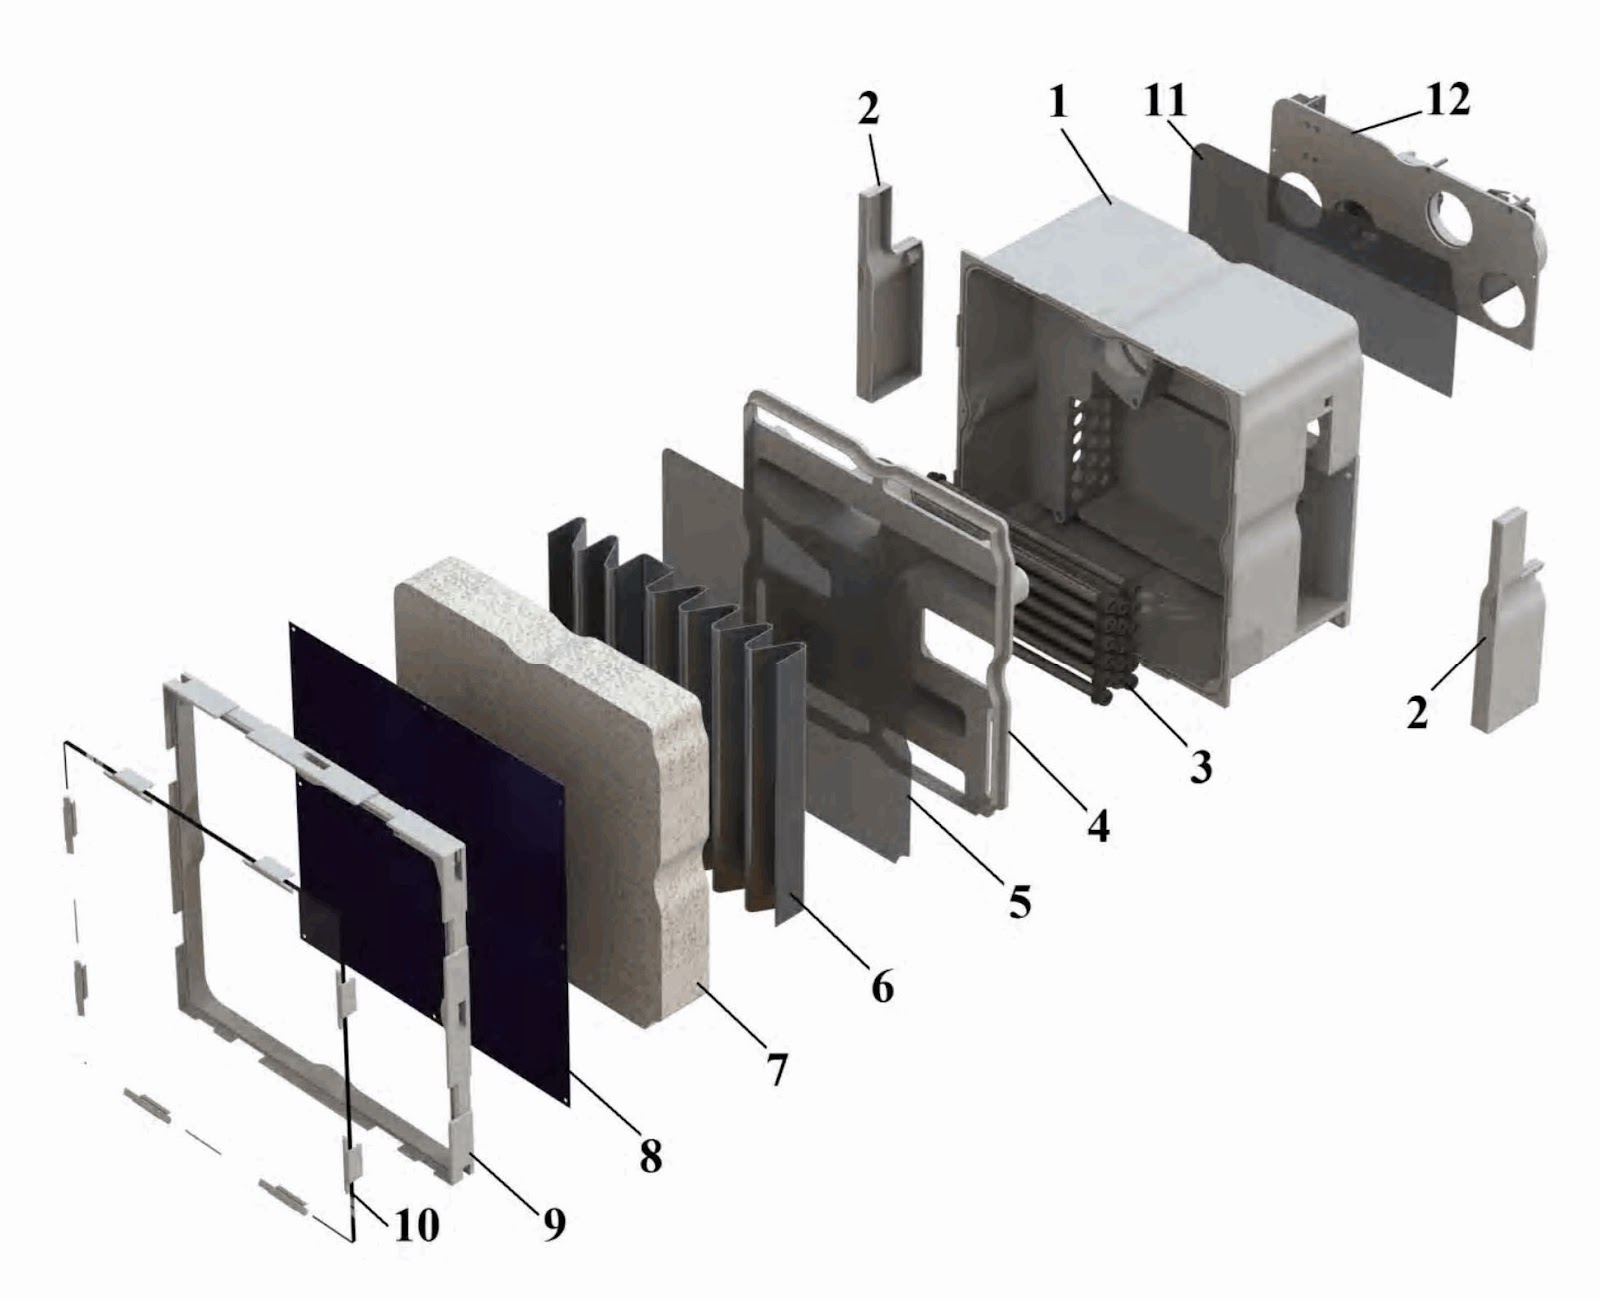 1 — корпус; 2 — боковые крышки; 3 — конденсатор воды; 4 — воздушный коллектор; 5 — опорная сетка; 6 — теплопроводящая вставка (размещается в слое пористого материала); 7 — пористый материал; 8 — селективный экран; 9 — рамка; 10 — прозрачный защитный экран; 11 — фильтр воздуха; 12 — система принудительной подачи воздуха 